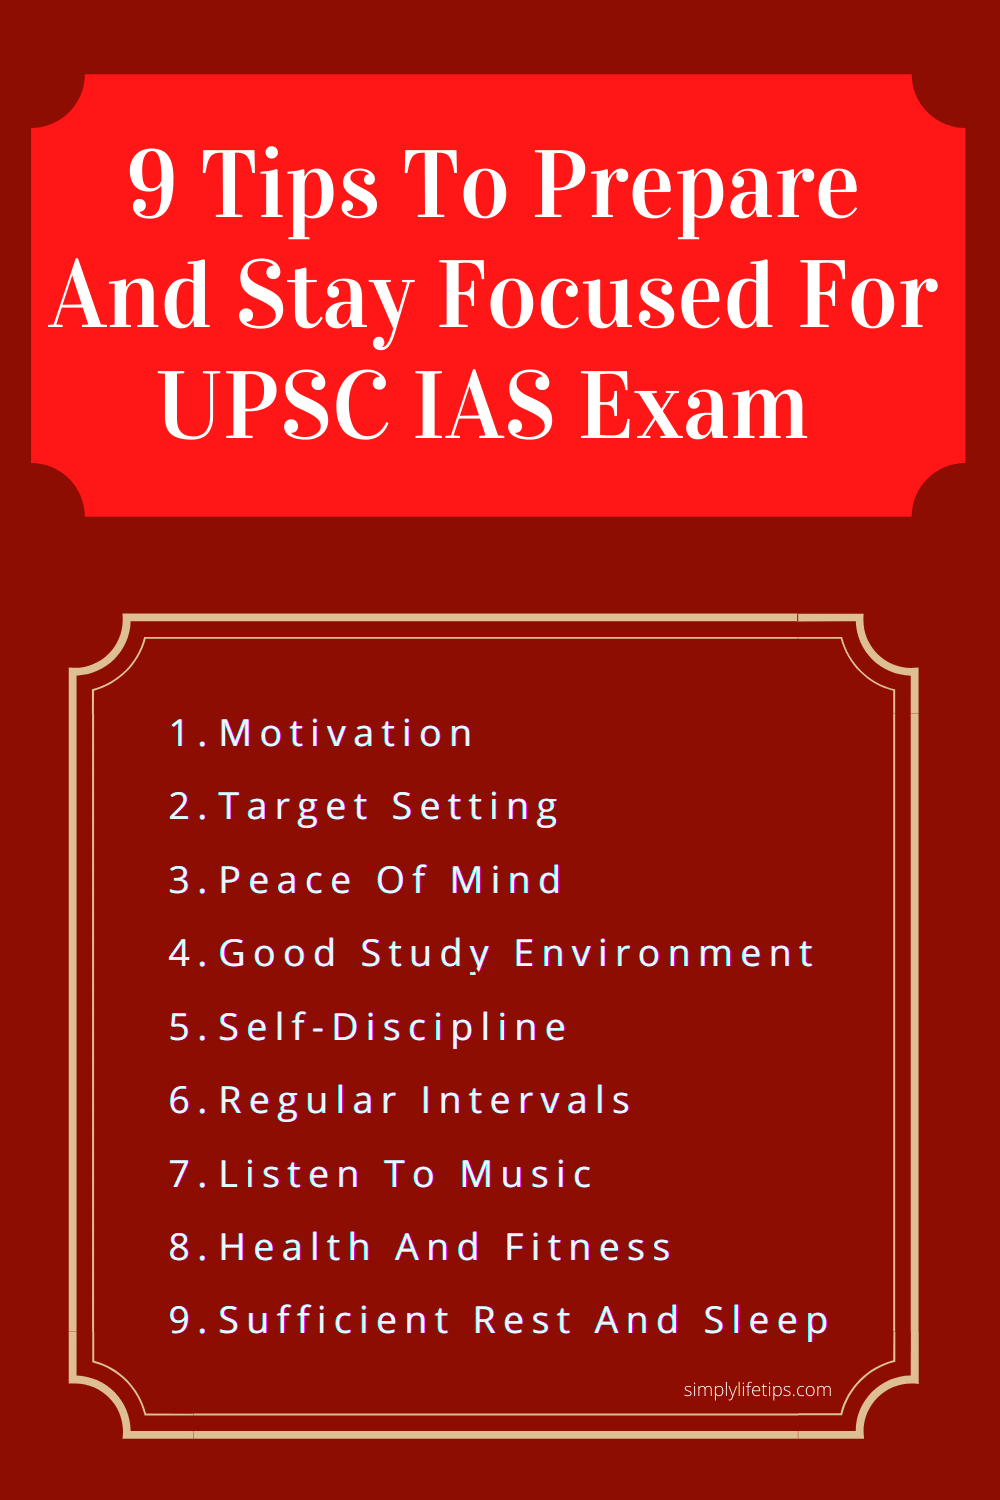 Tips For UPSC IAS Exam